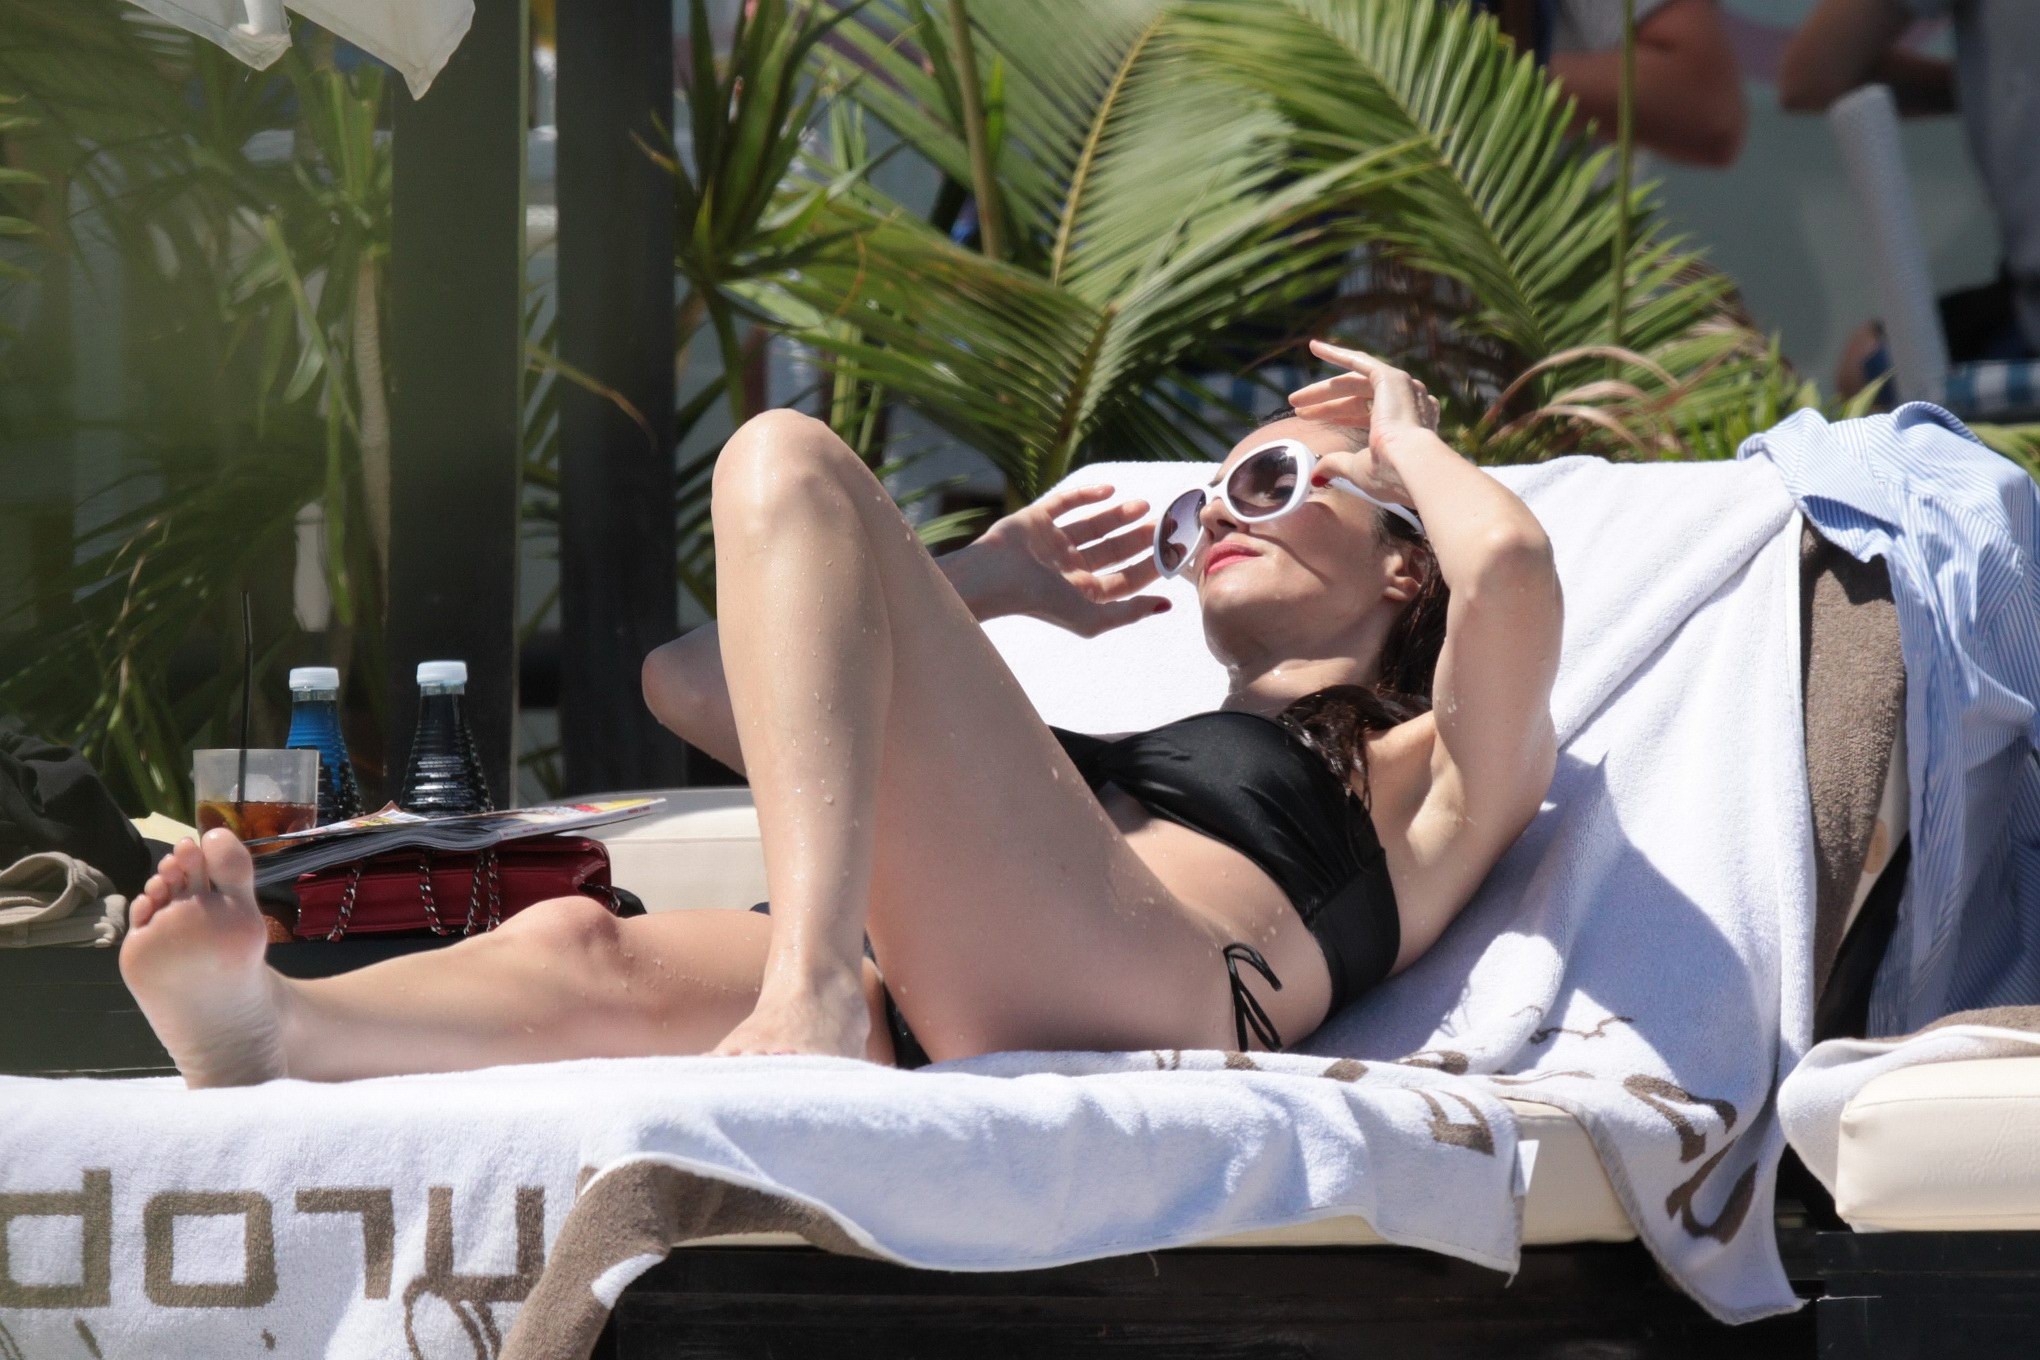 Paz vega porte deux bikinis noirs différents au bord d'une piscine en Espagne.
 #75292281